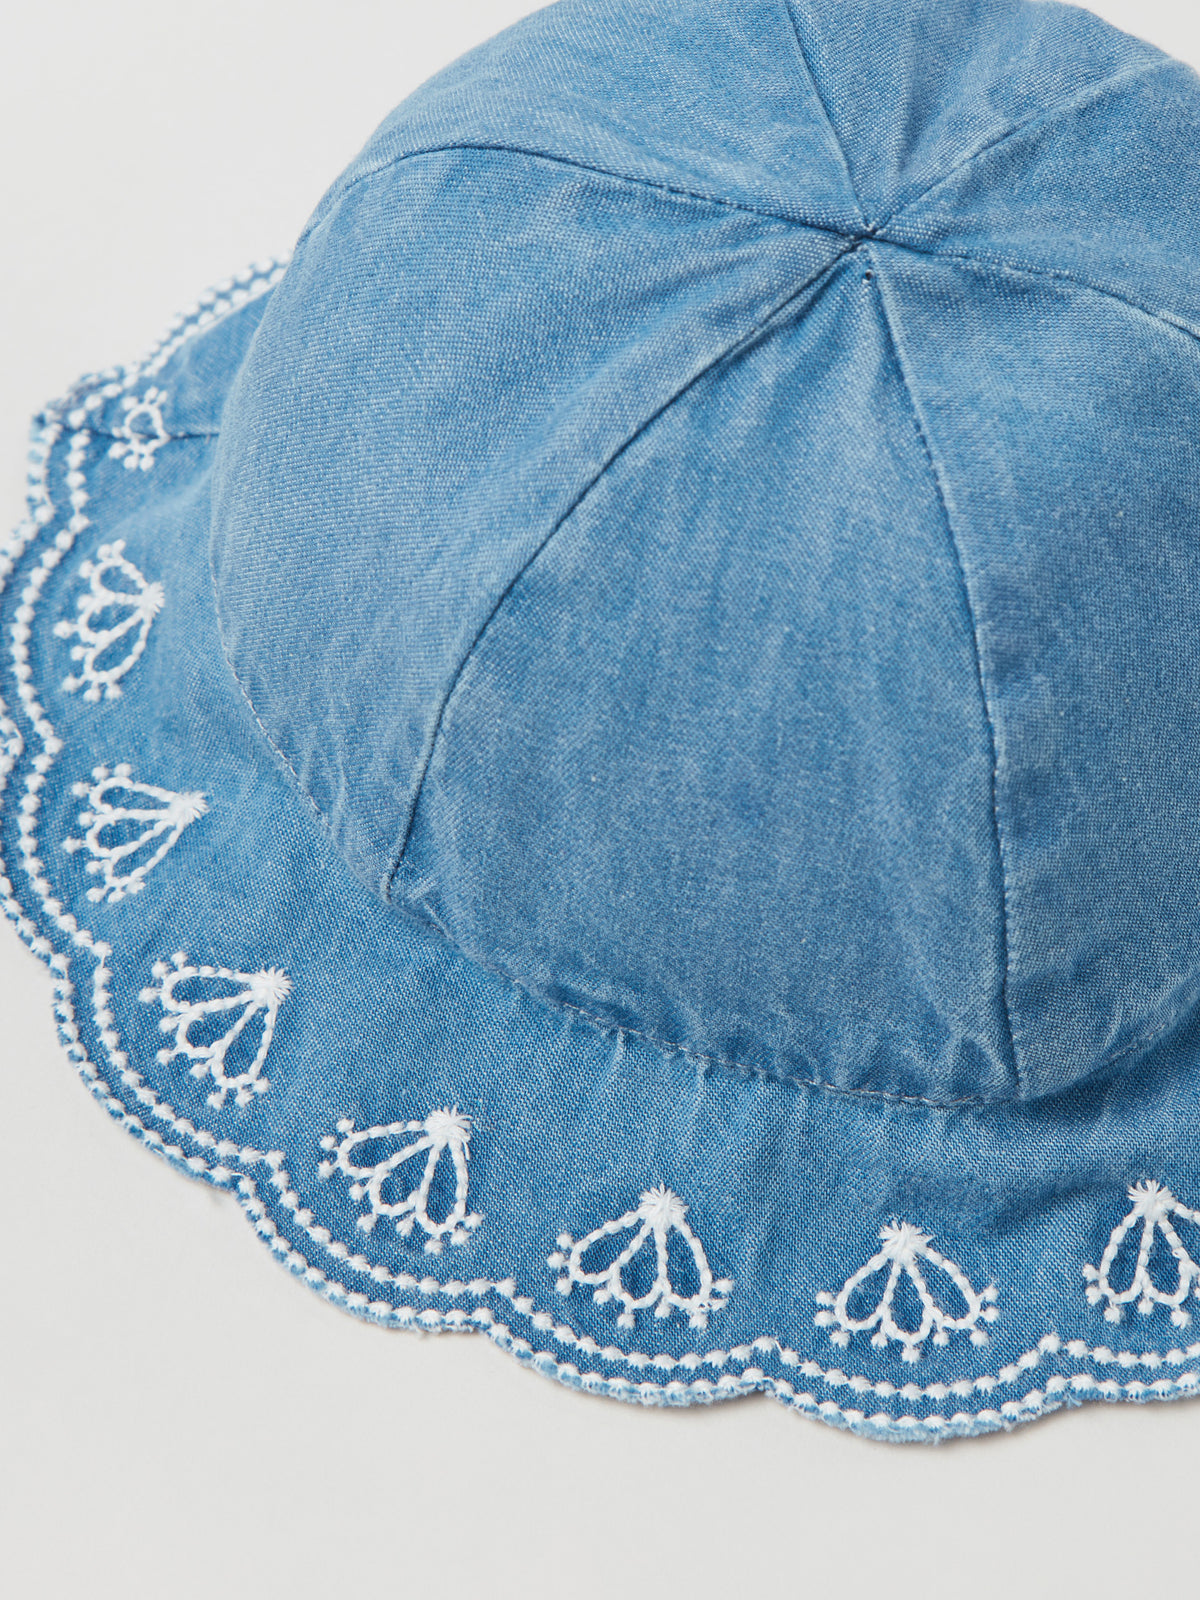 כובע רחב שוליים בשילוב רקמה / תינוקות